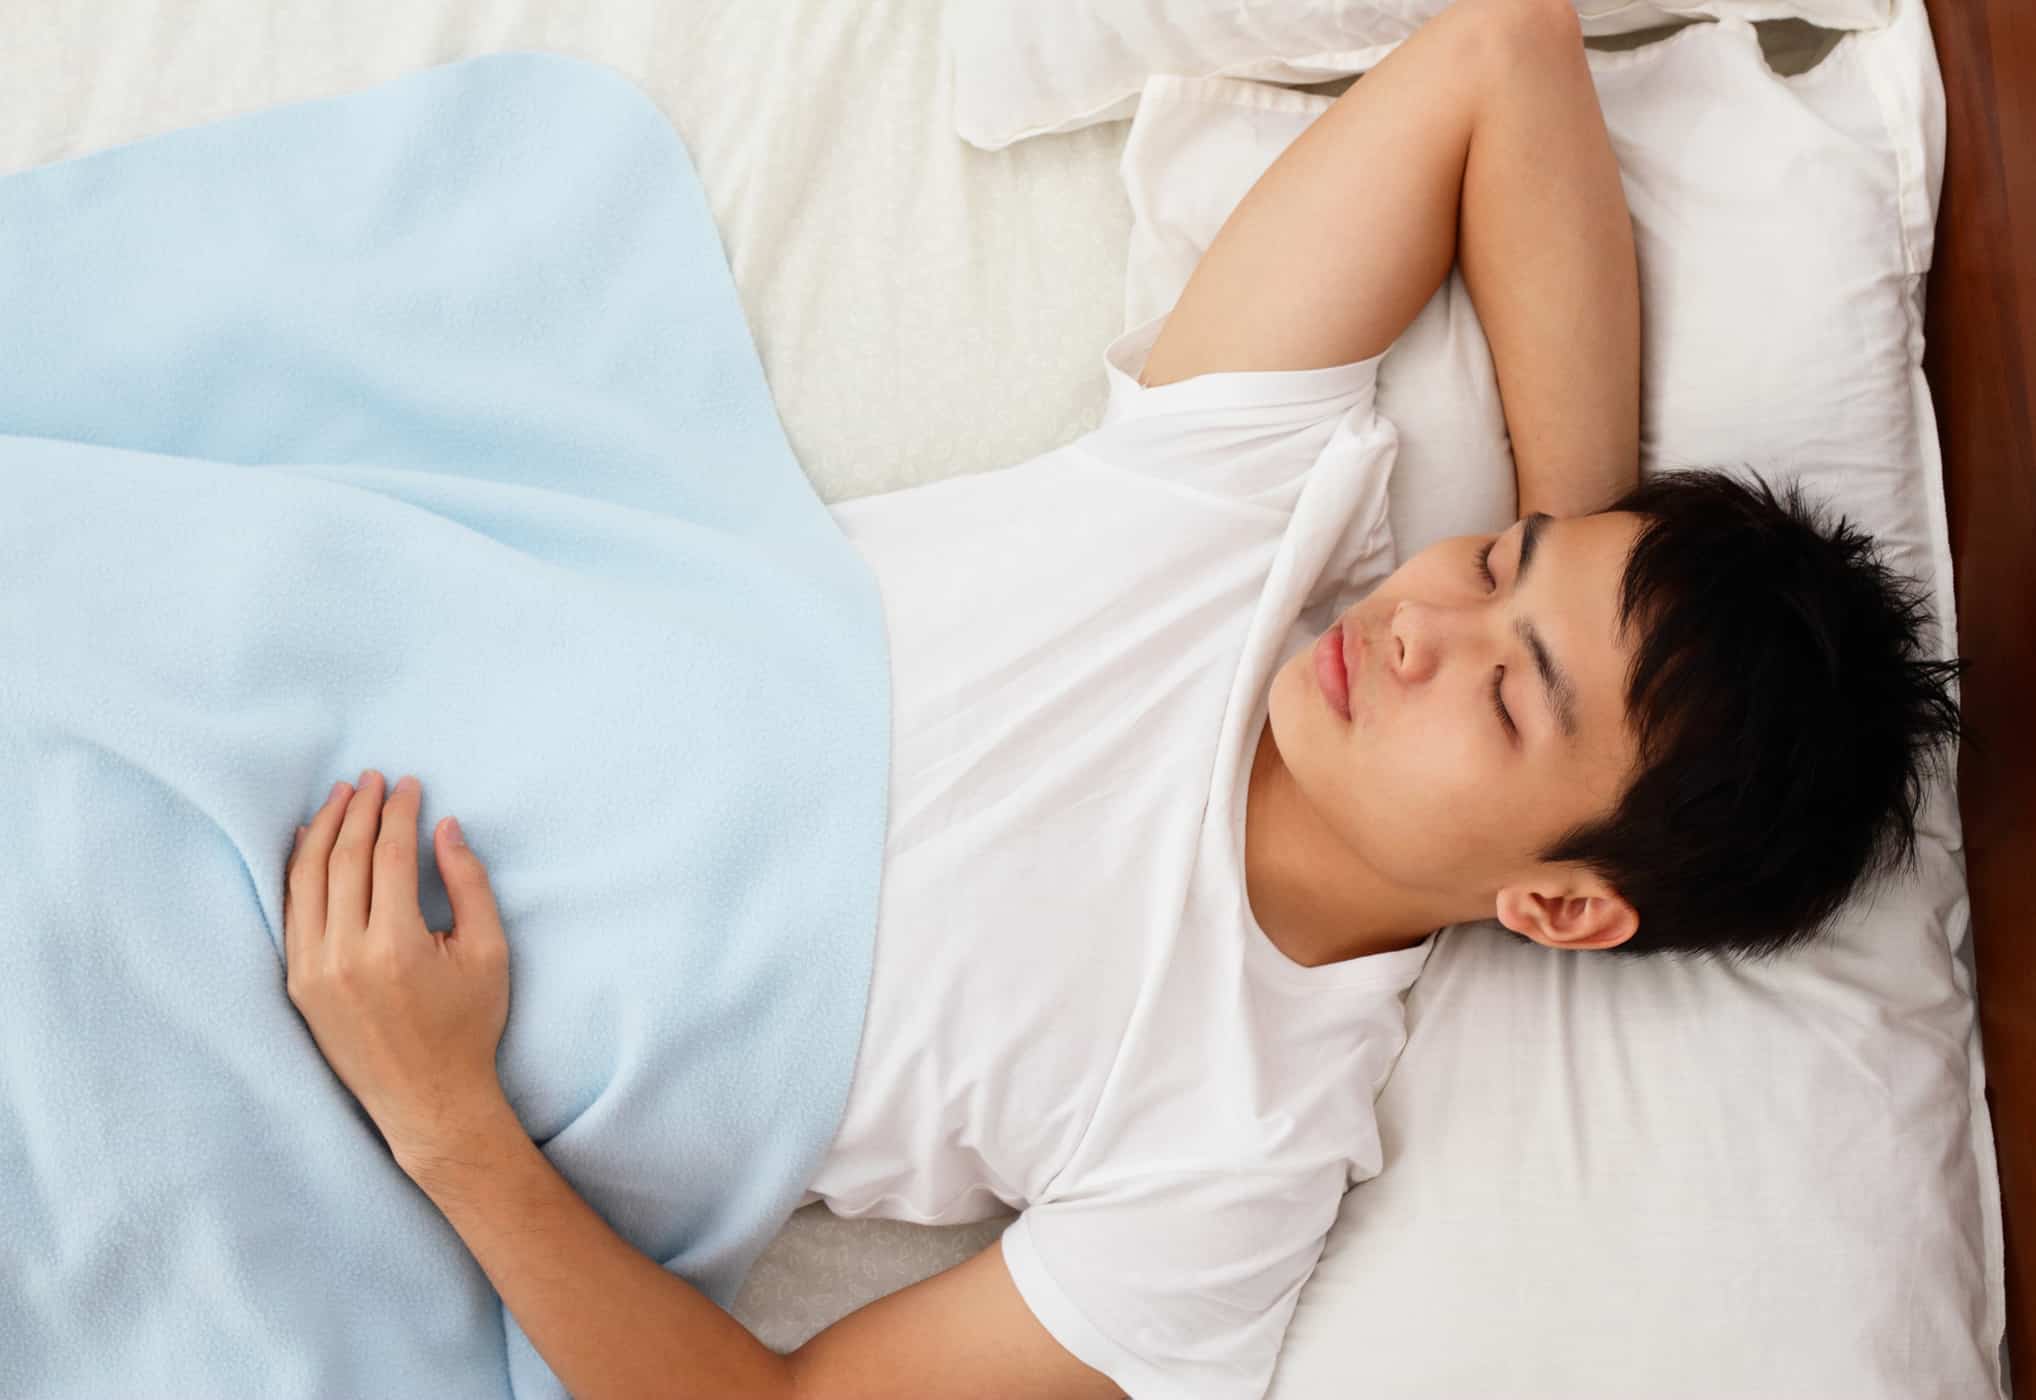 η θέση του ύπνου επηρεάζει την πέψη